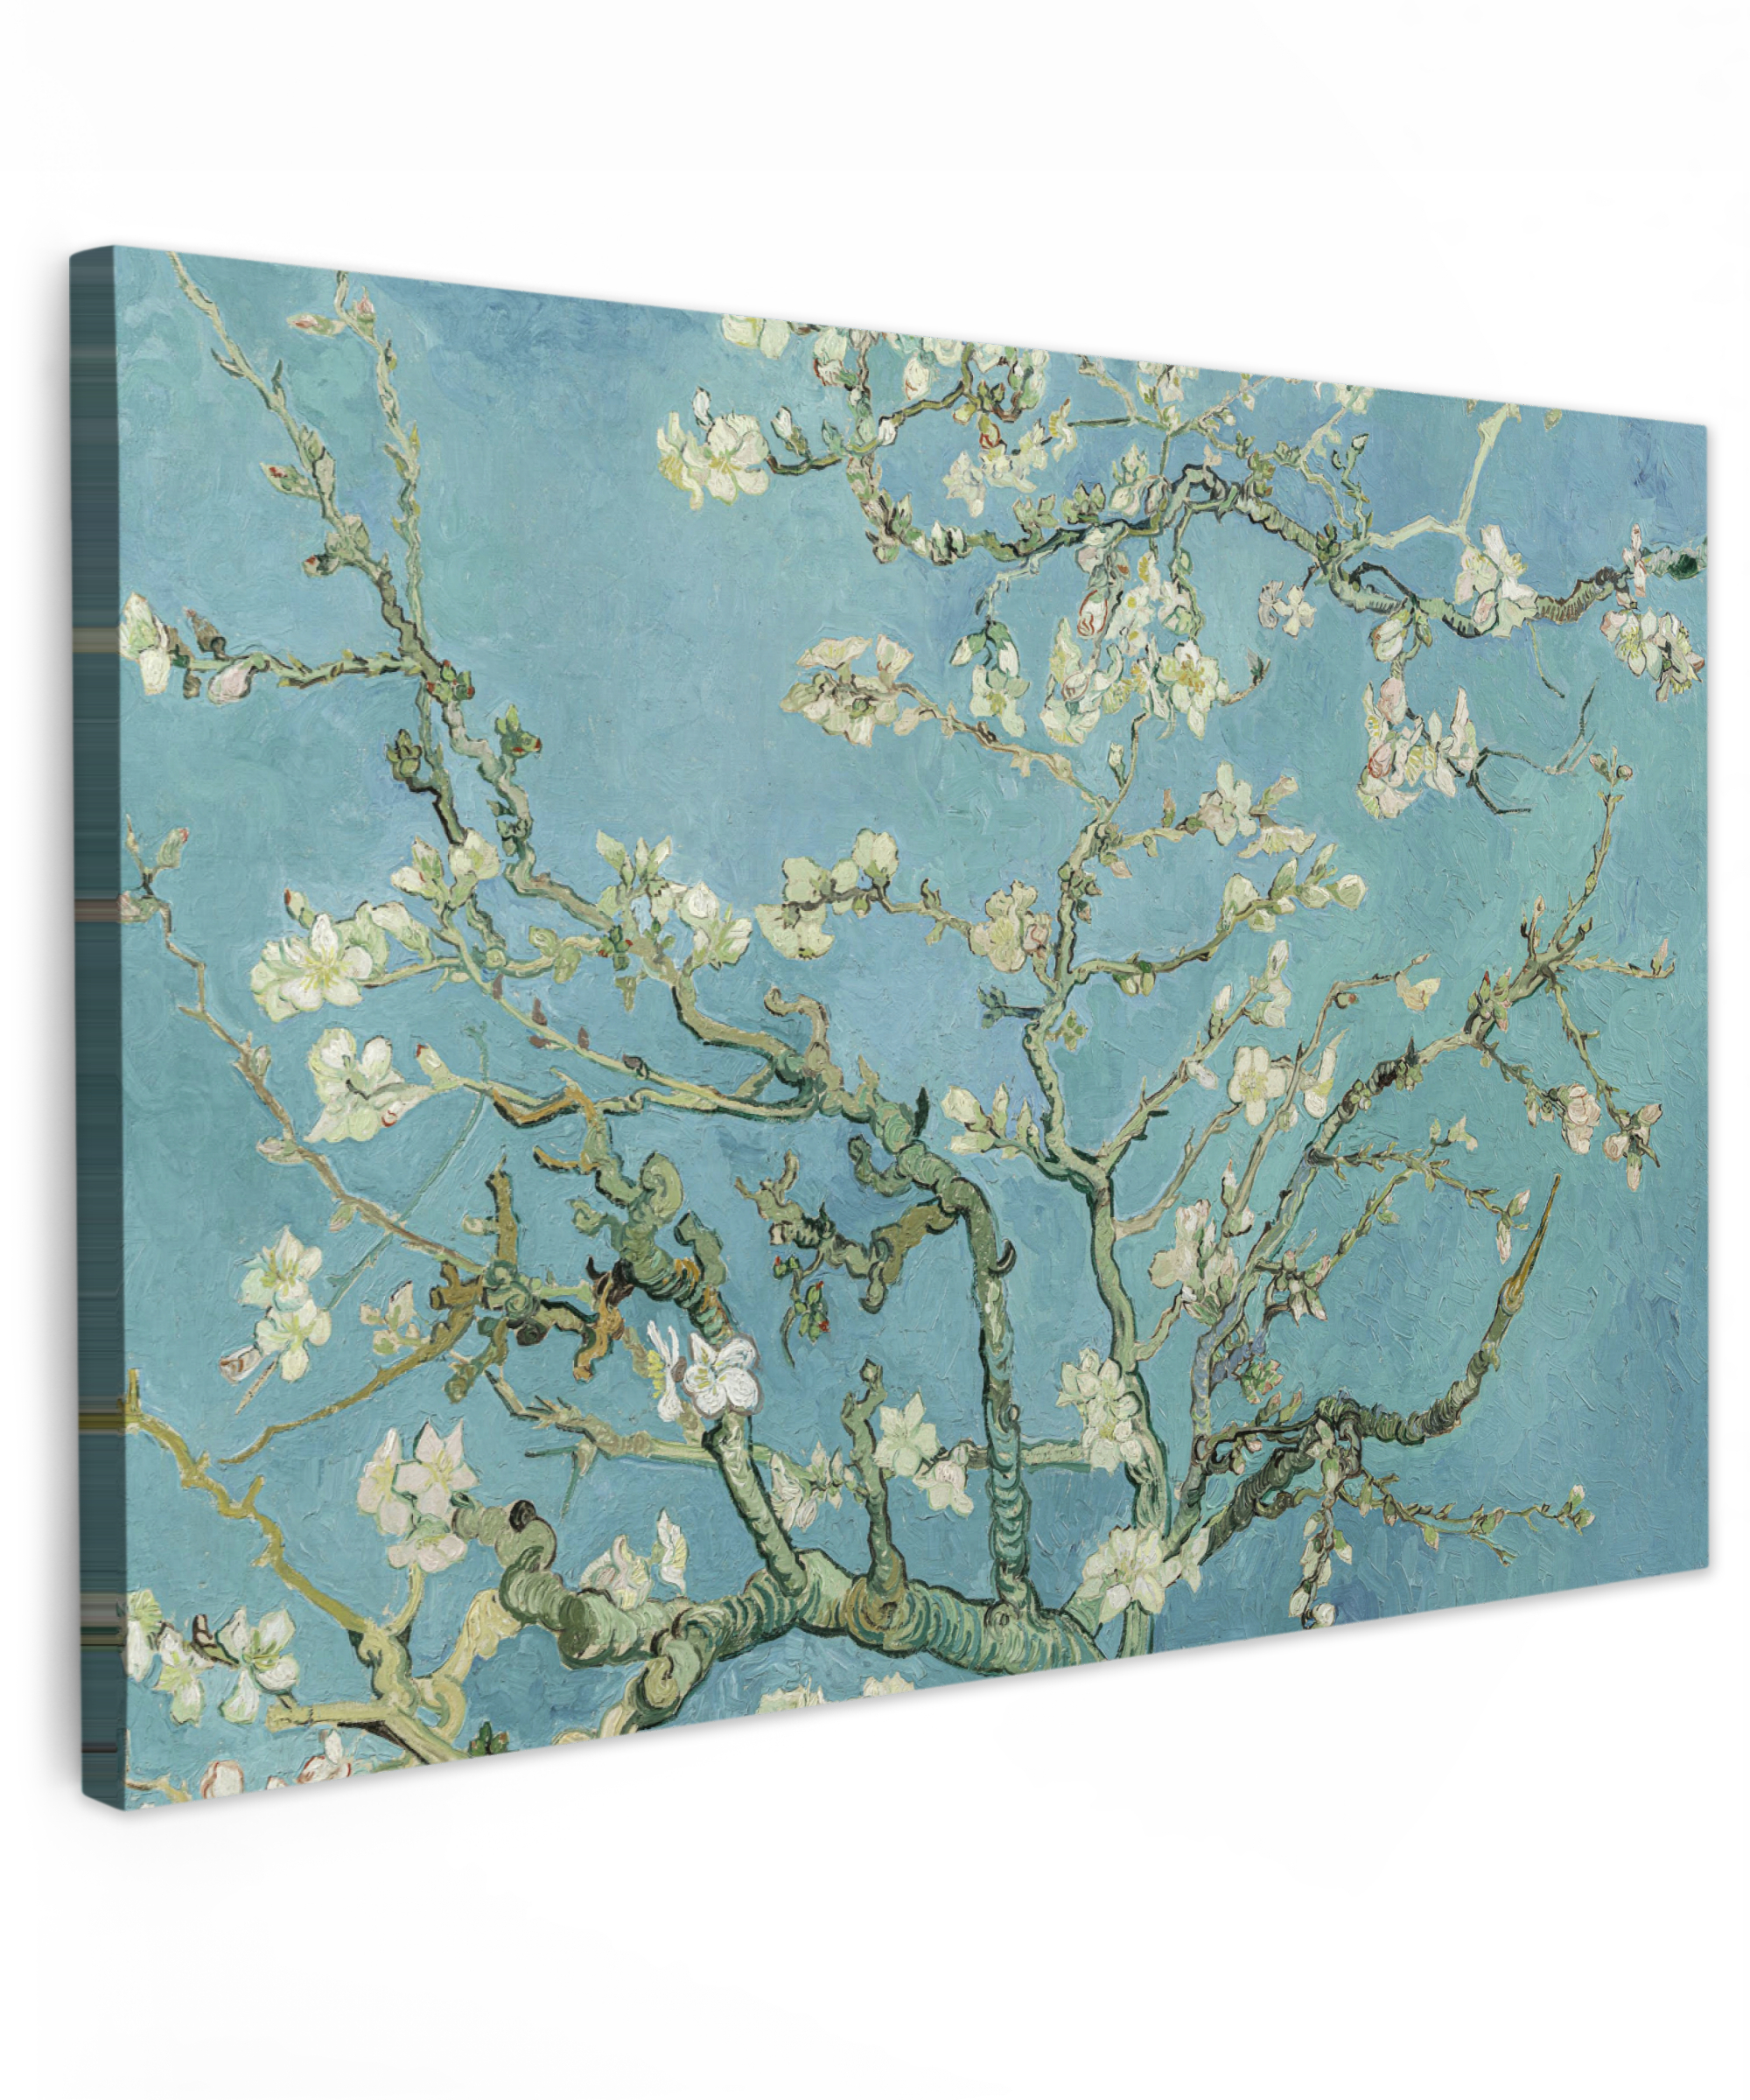 Tableau sur toile - Van Gogh - Amandier en fleurs - Anciens maîtres - Art - Vintage